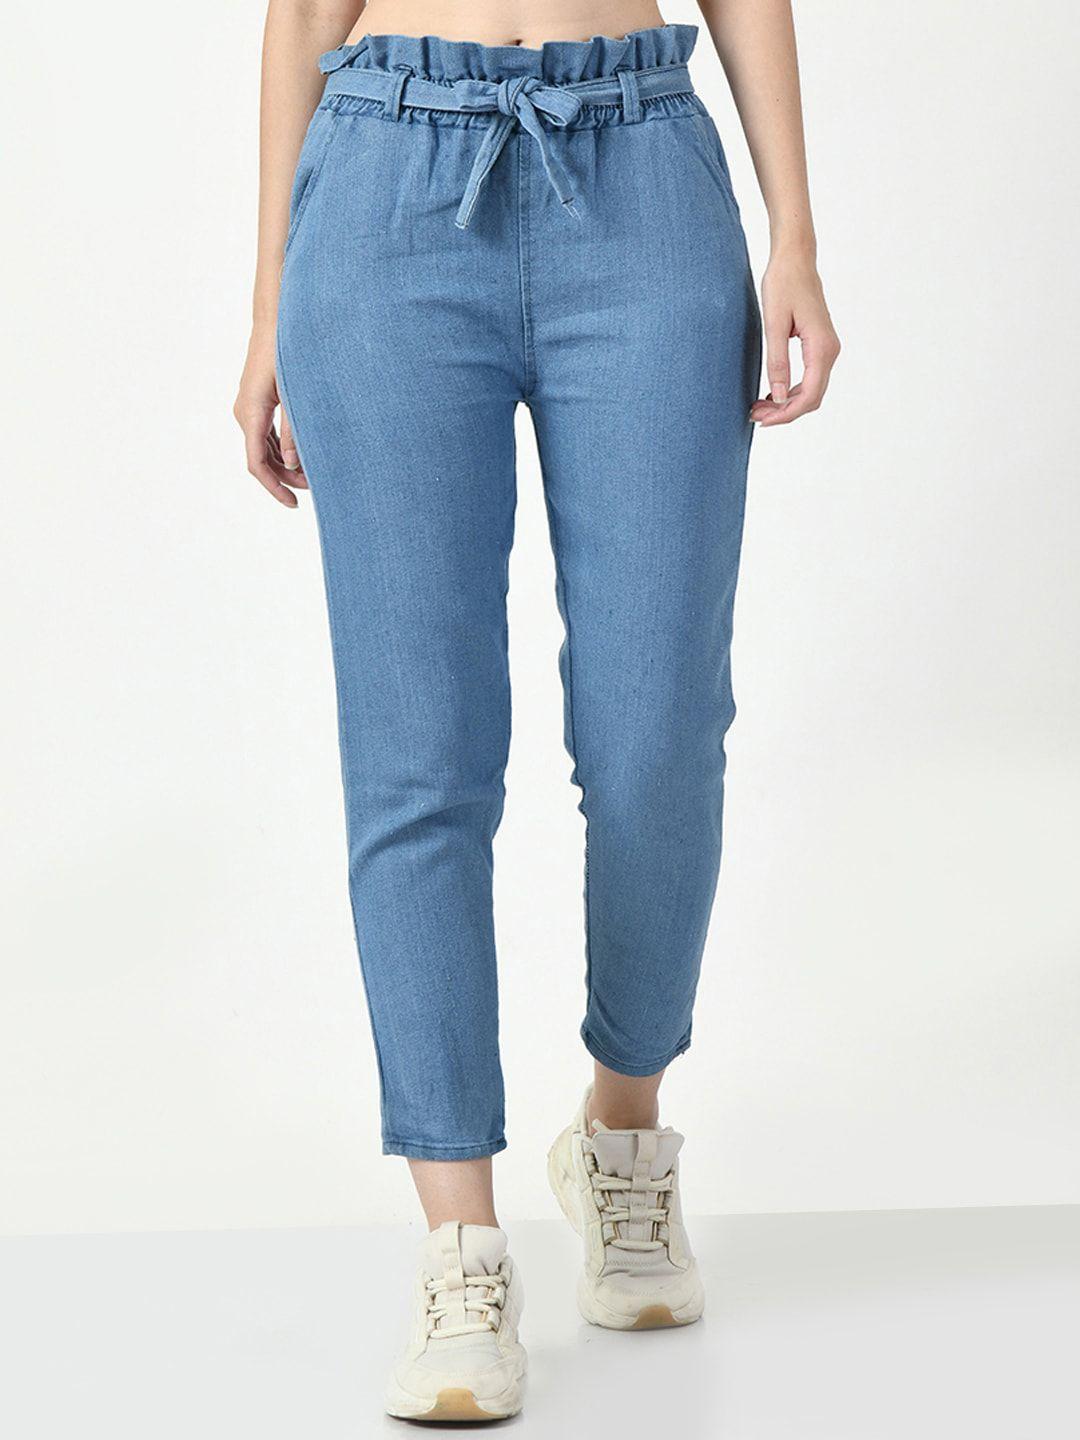 dkgf fashion women comfort light fade cotton jeans